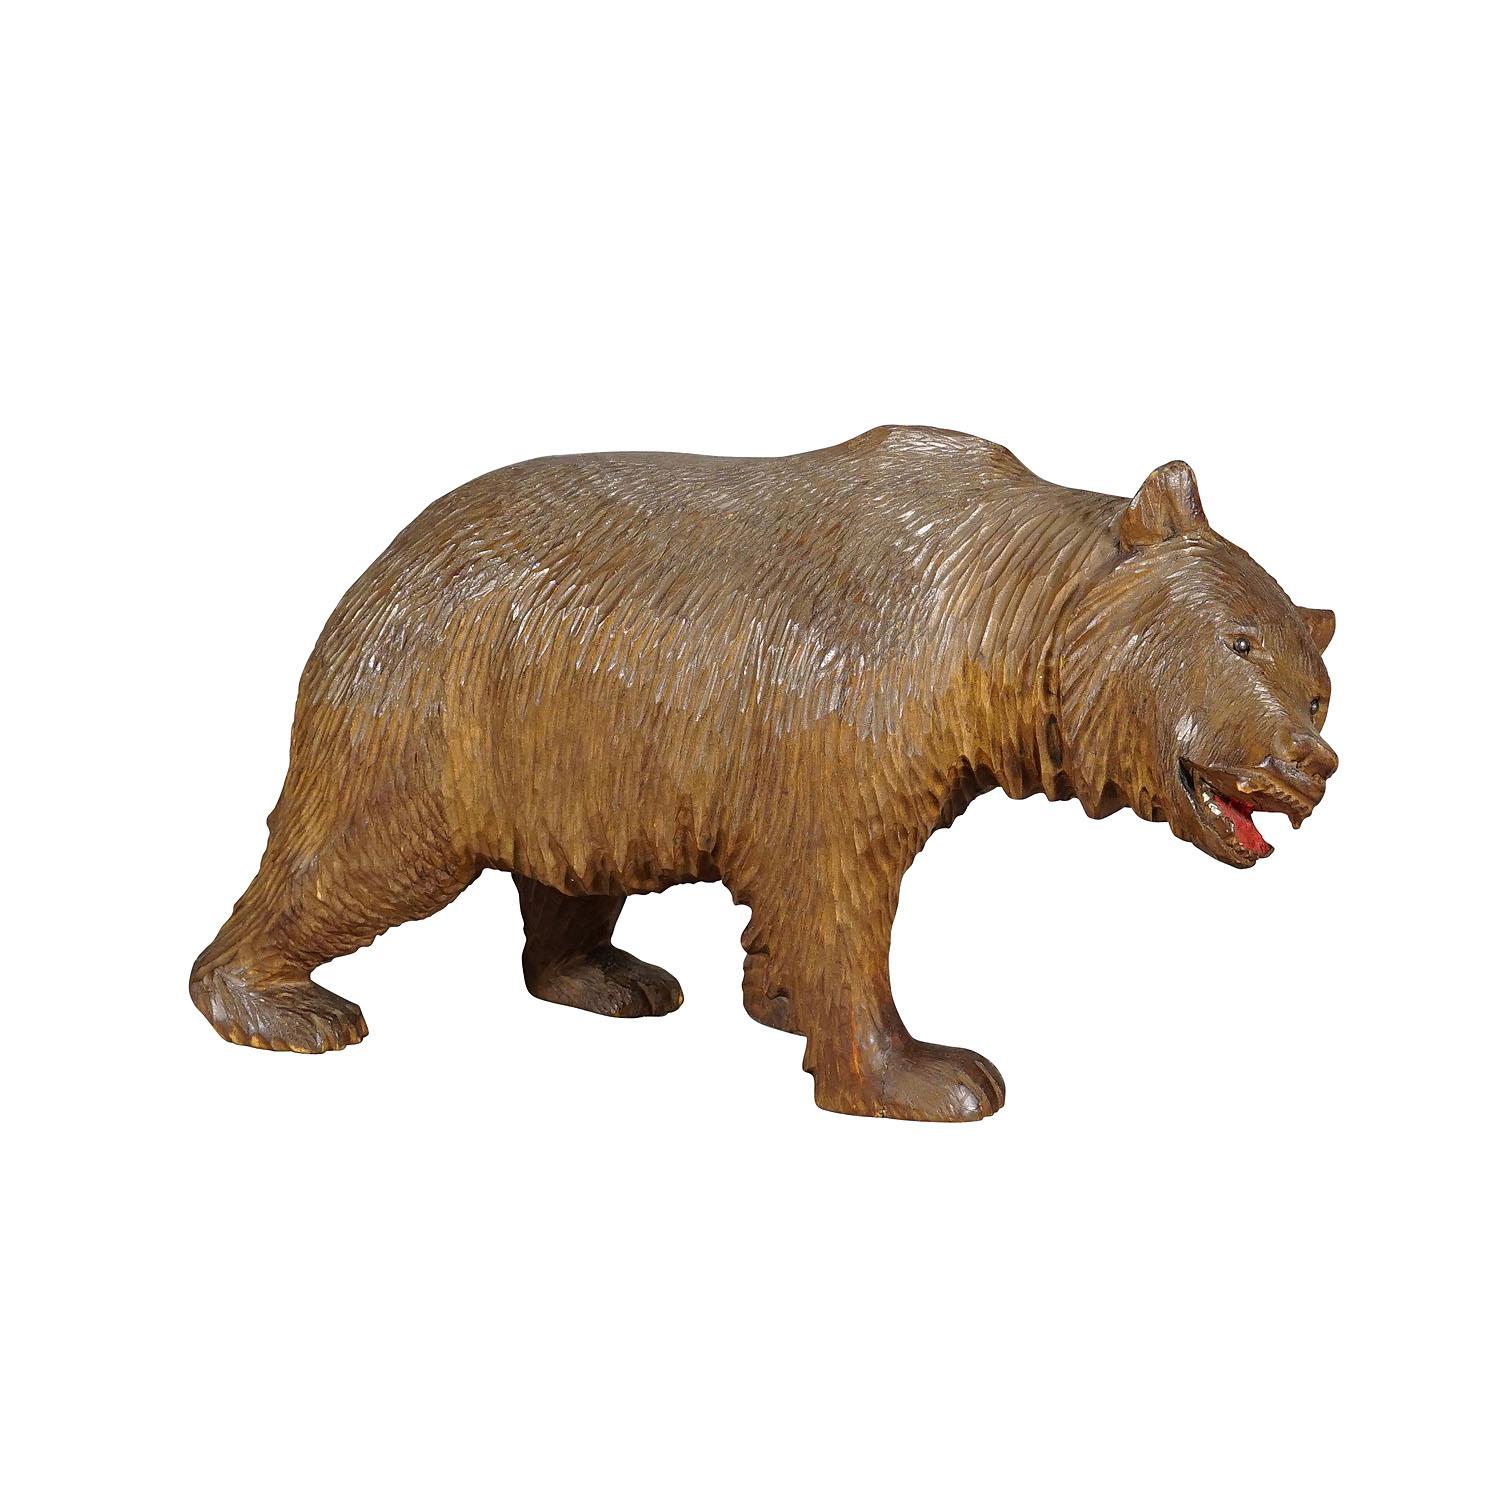 Grand ours en bois vintage, sculpté à la main à Brienz vers les années 1930.

Une grande statue vintage d'un ours qui marche. En bois de tilleul, finement sculpté à la main avec des détails naturalistes à Brienz, en Suisse, vers les années 1930. Un